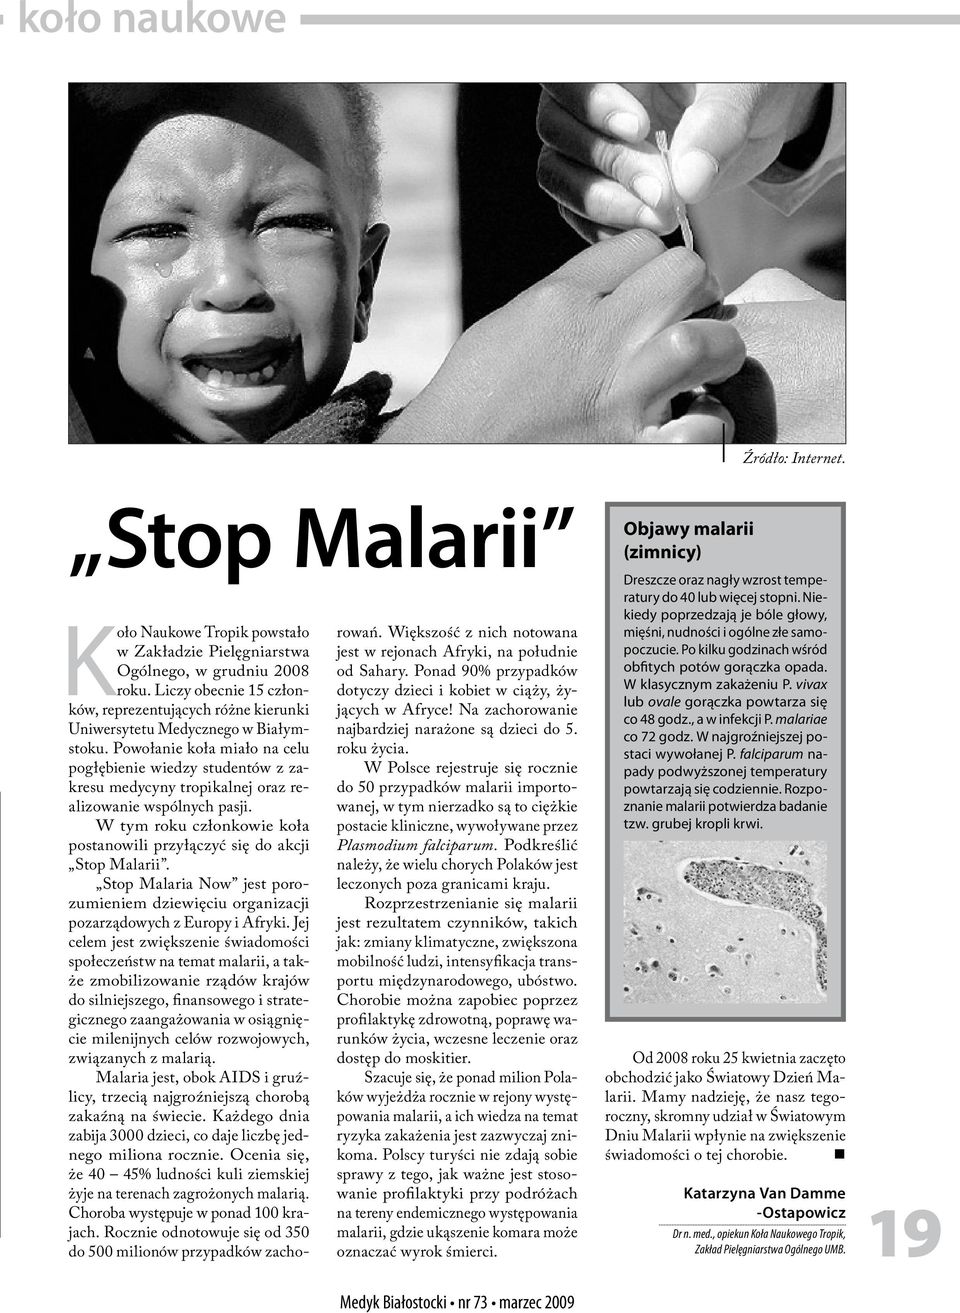 Powołanie koła miało na celu pogłębienie wiedzy studentów z zakresu medycyny tropikalnej oraz realizowanie wspólnych pasji. W tym roku członkowie koła postanowili przyłączyć się do akcji Stop Malarii.